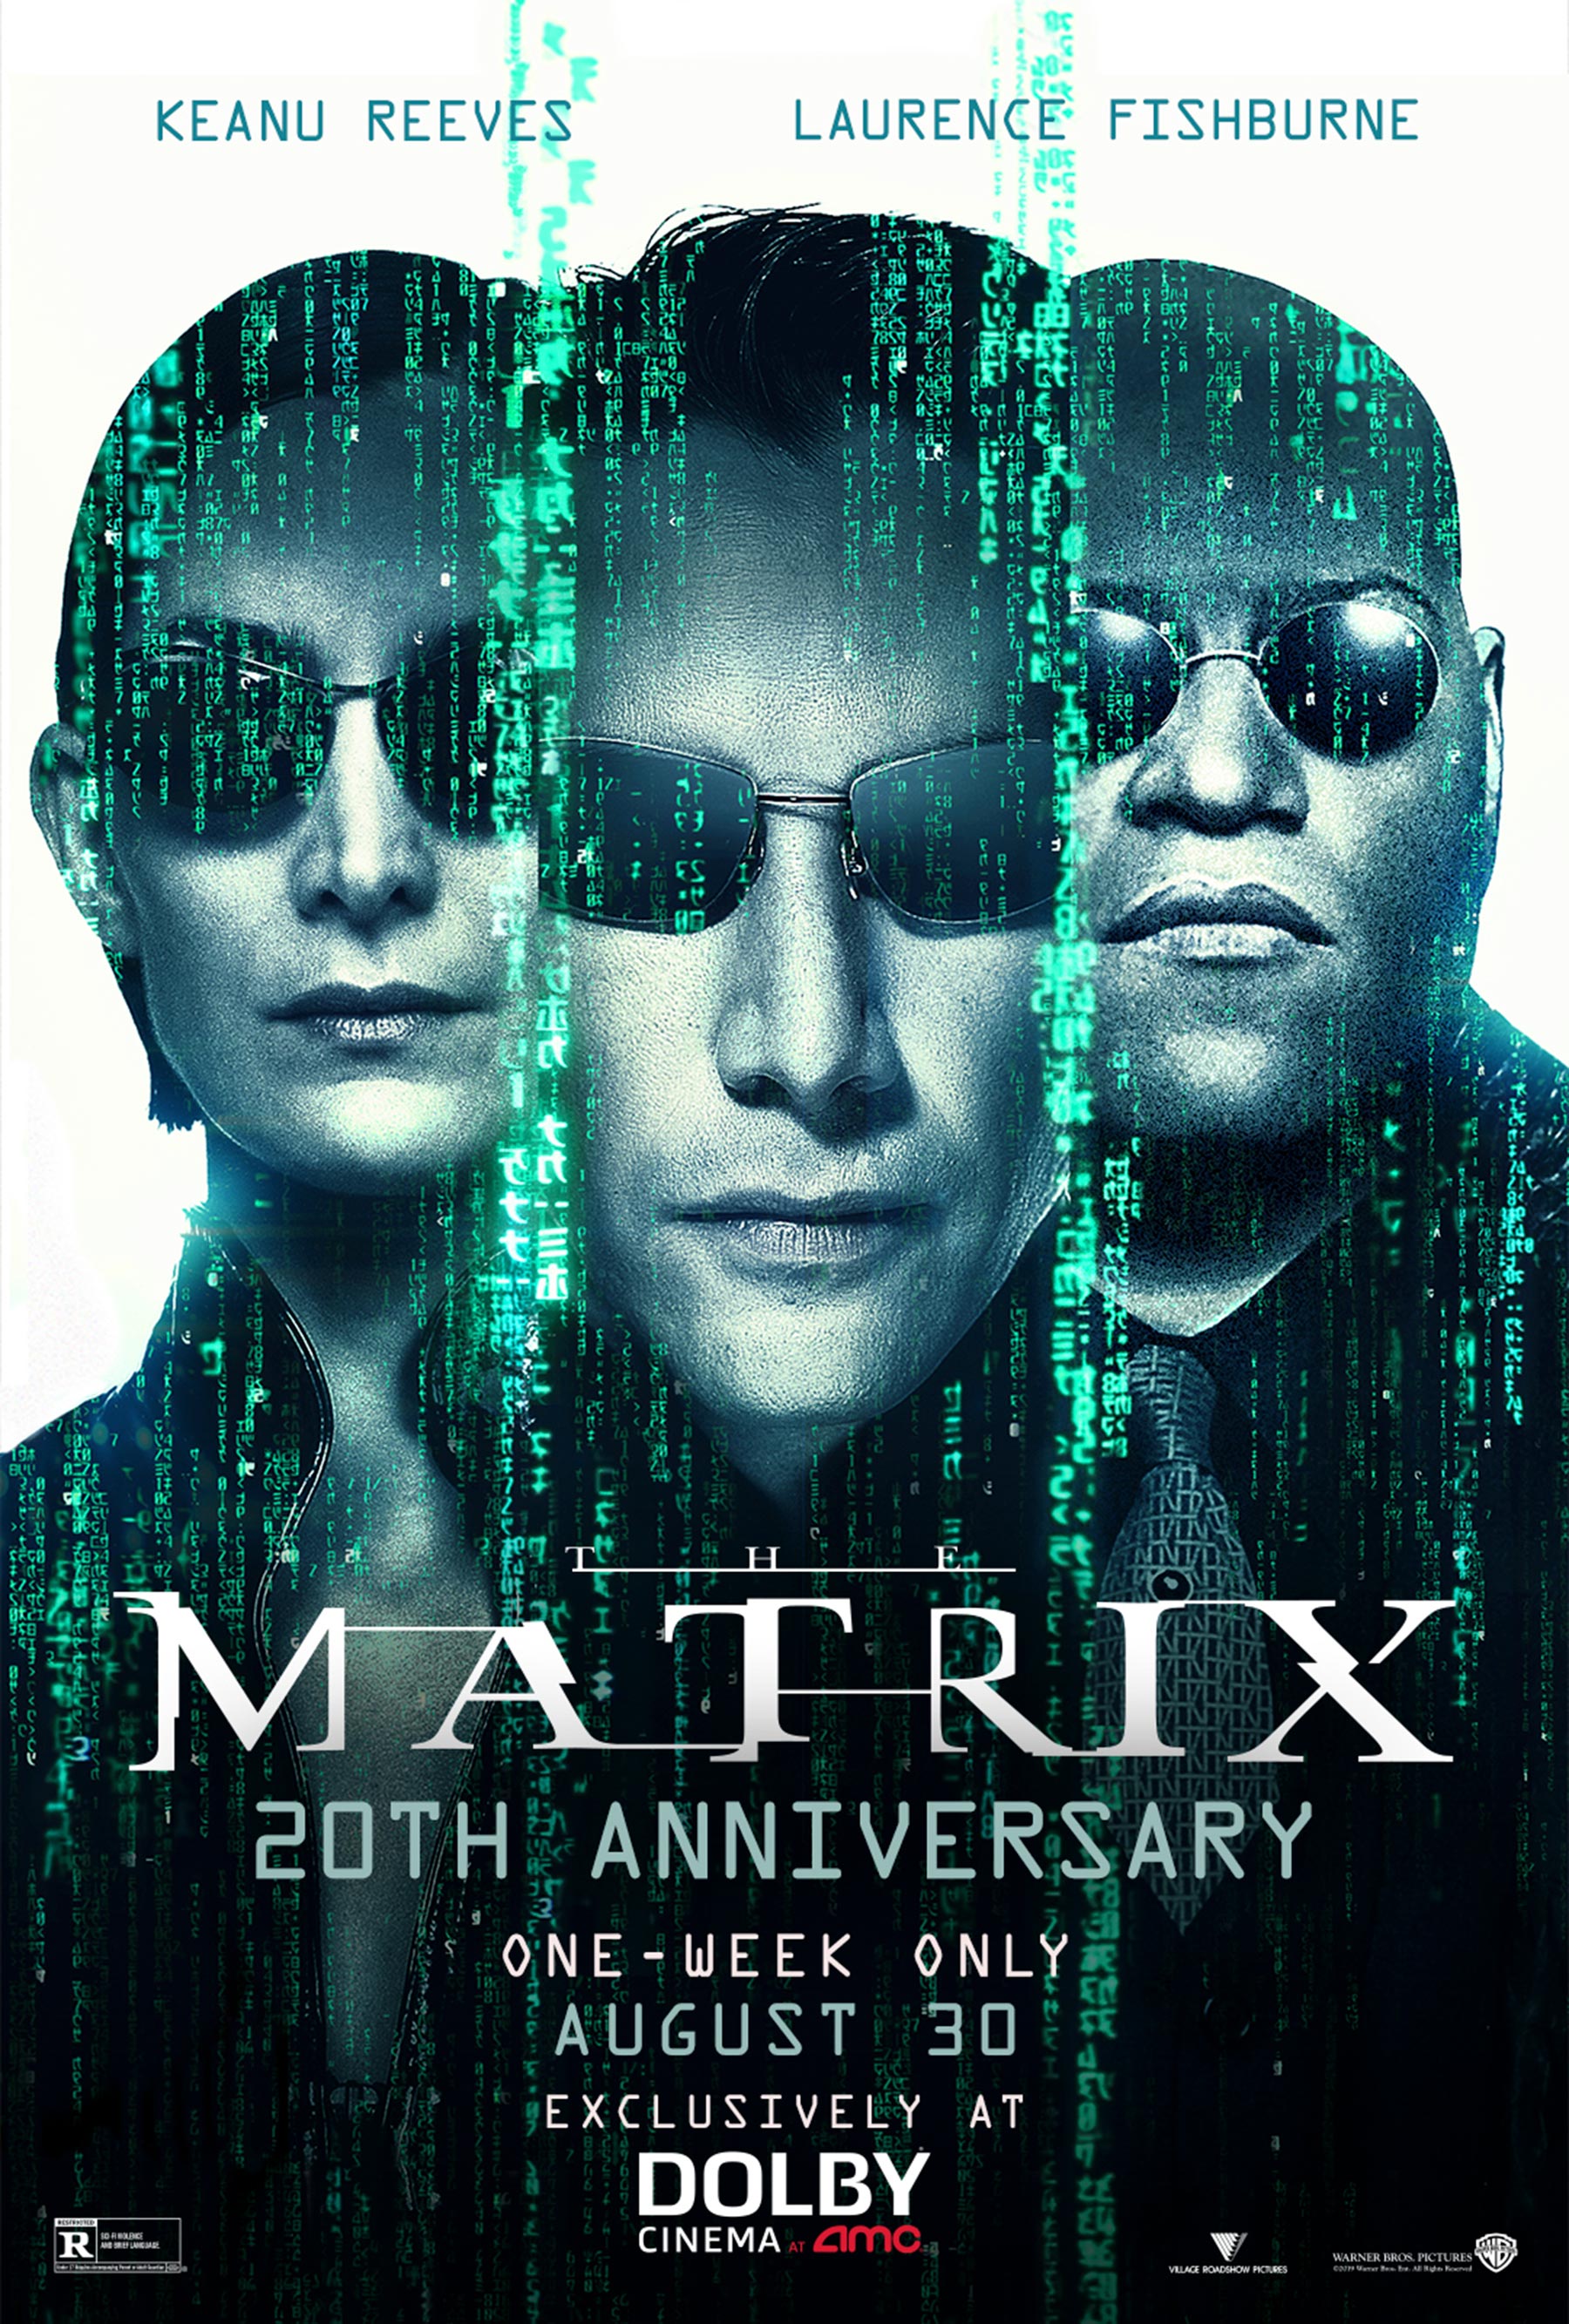 Matrix voltará aos cinemas dos EUA em aniversário de 20 anos - 1